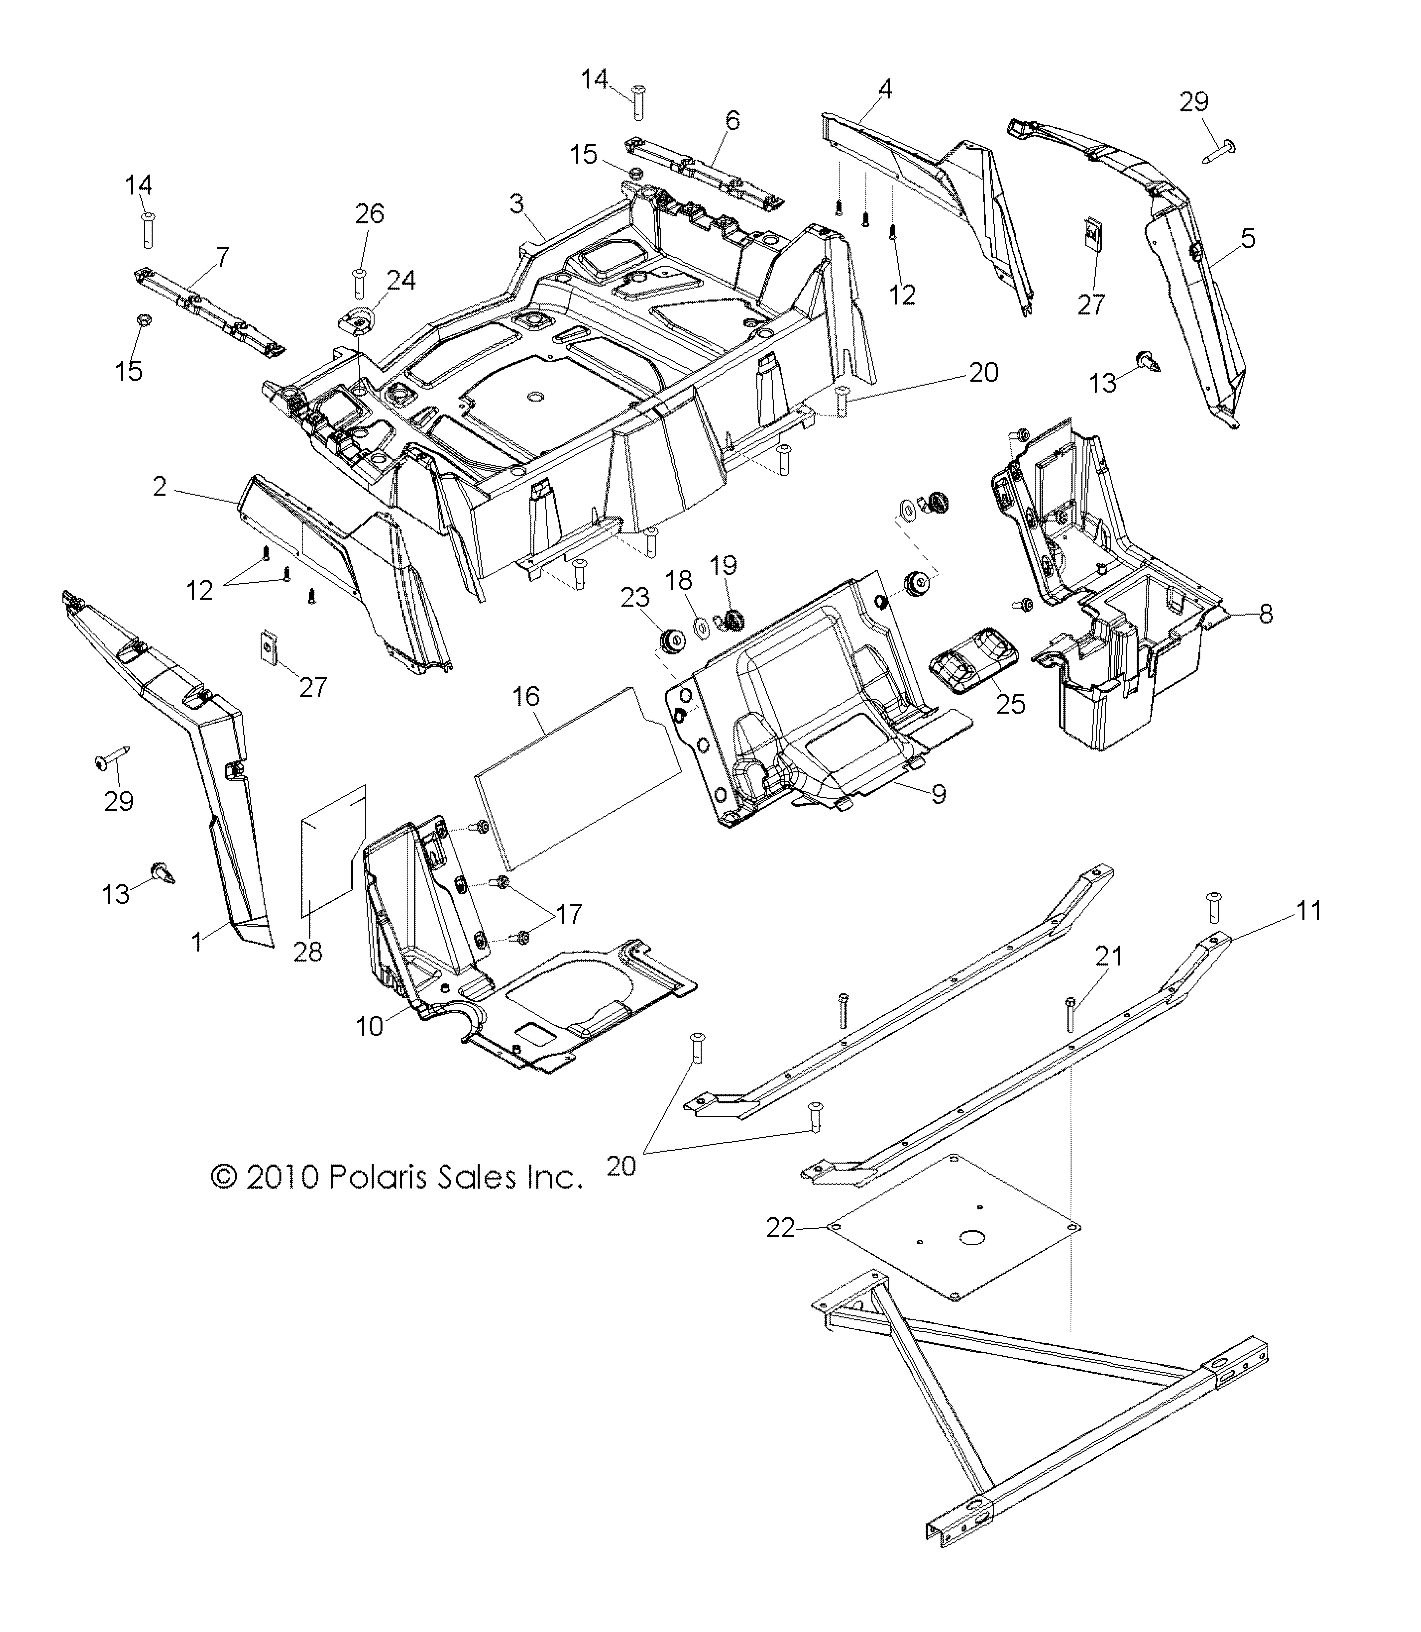 Foto diagrama Polaris que contem a peça 5437472-538